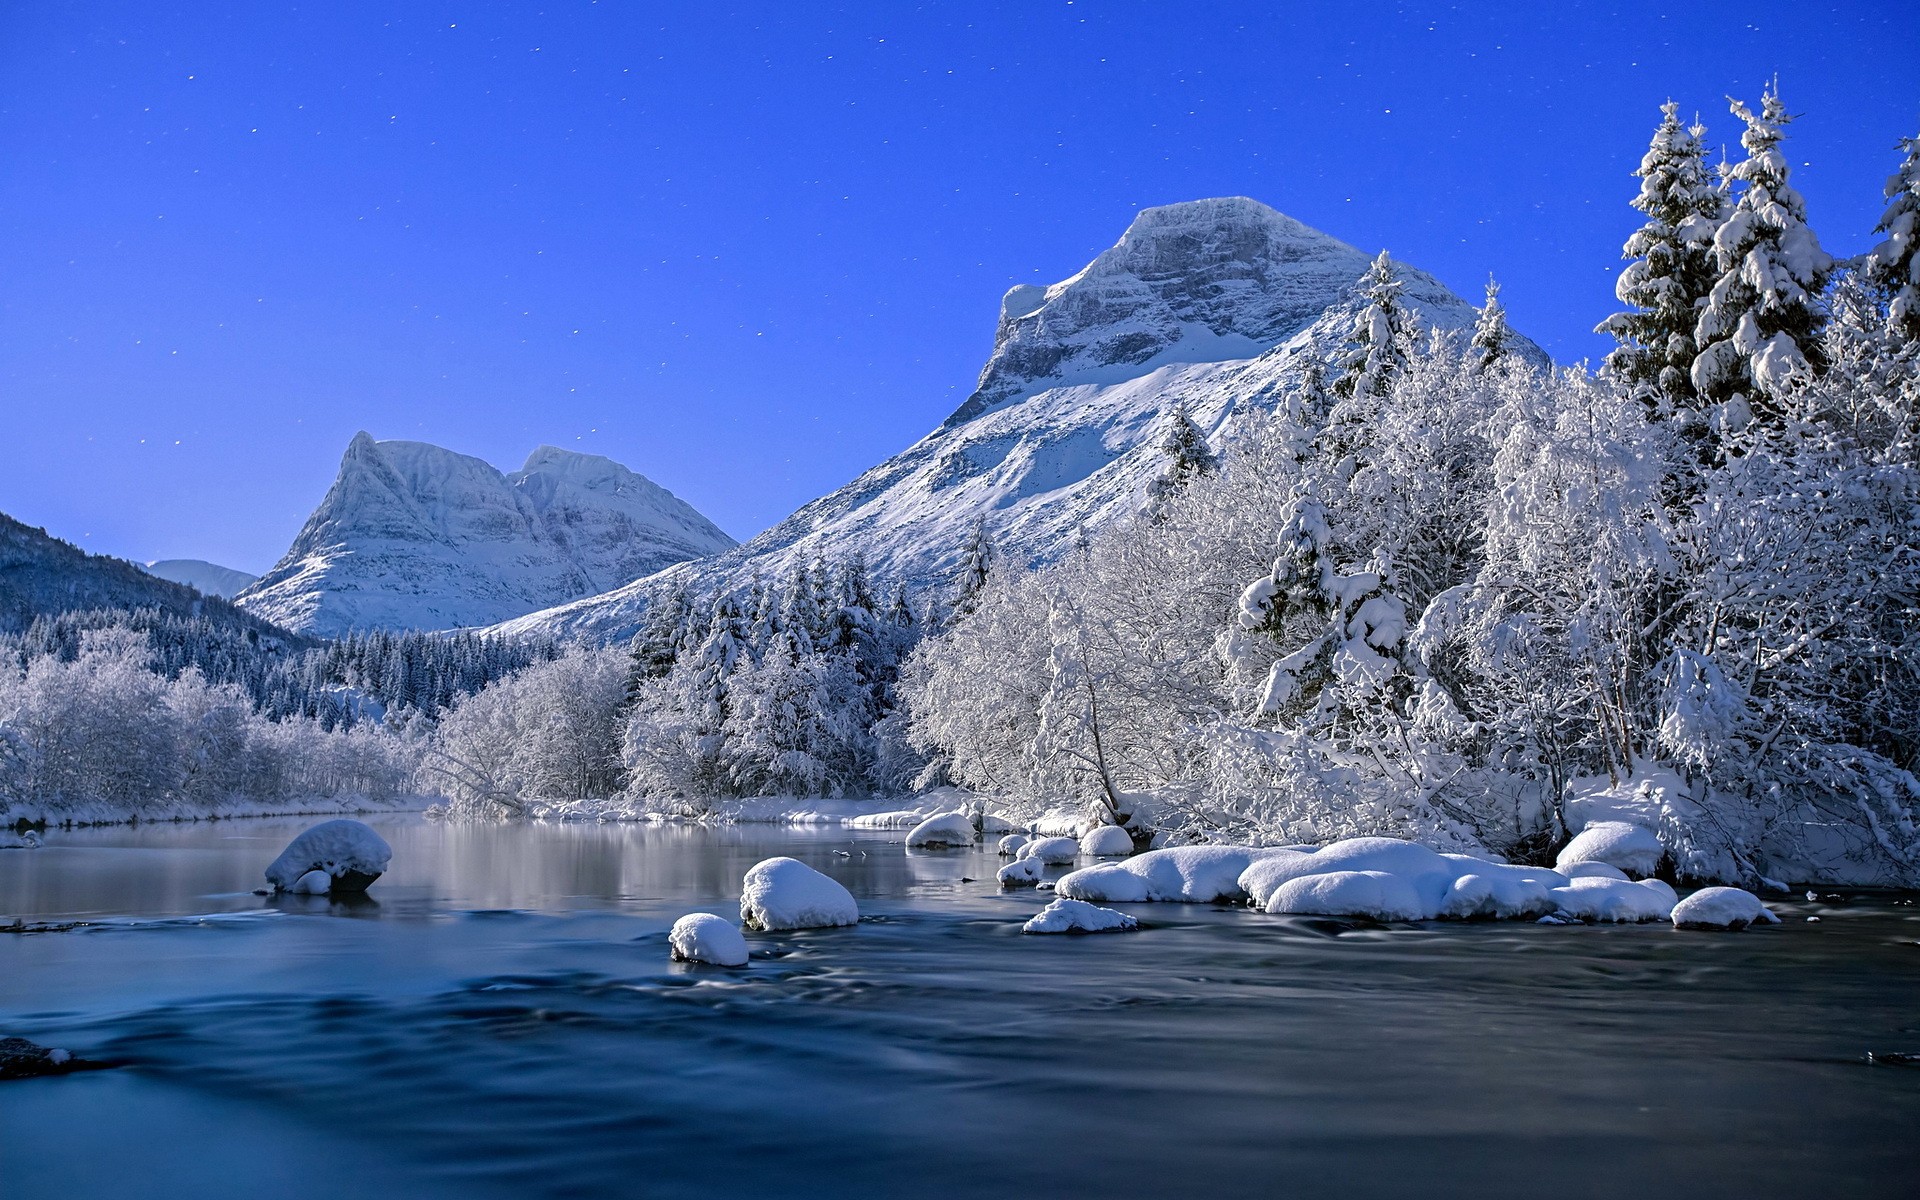 عکس های پس زمینه زیبا از فصل زمستان